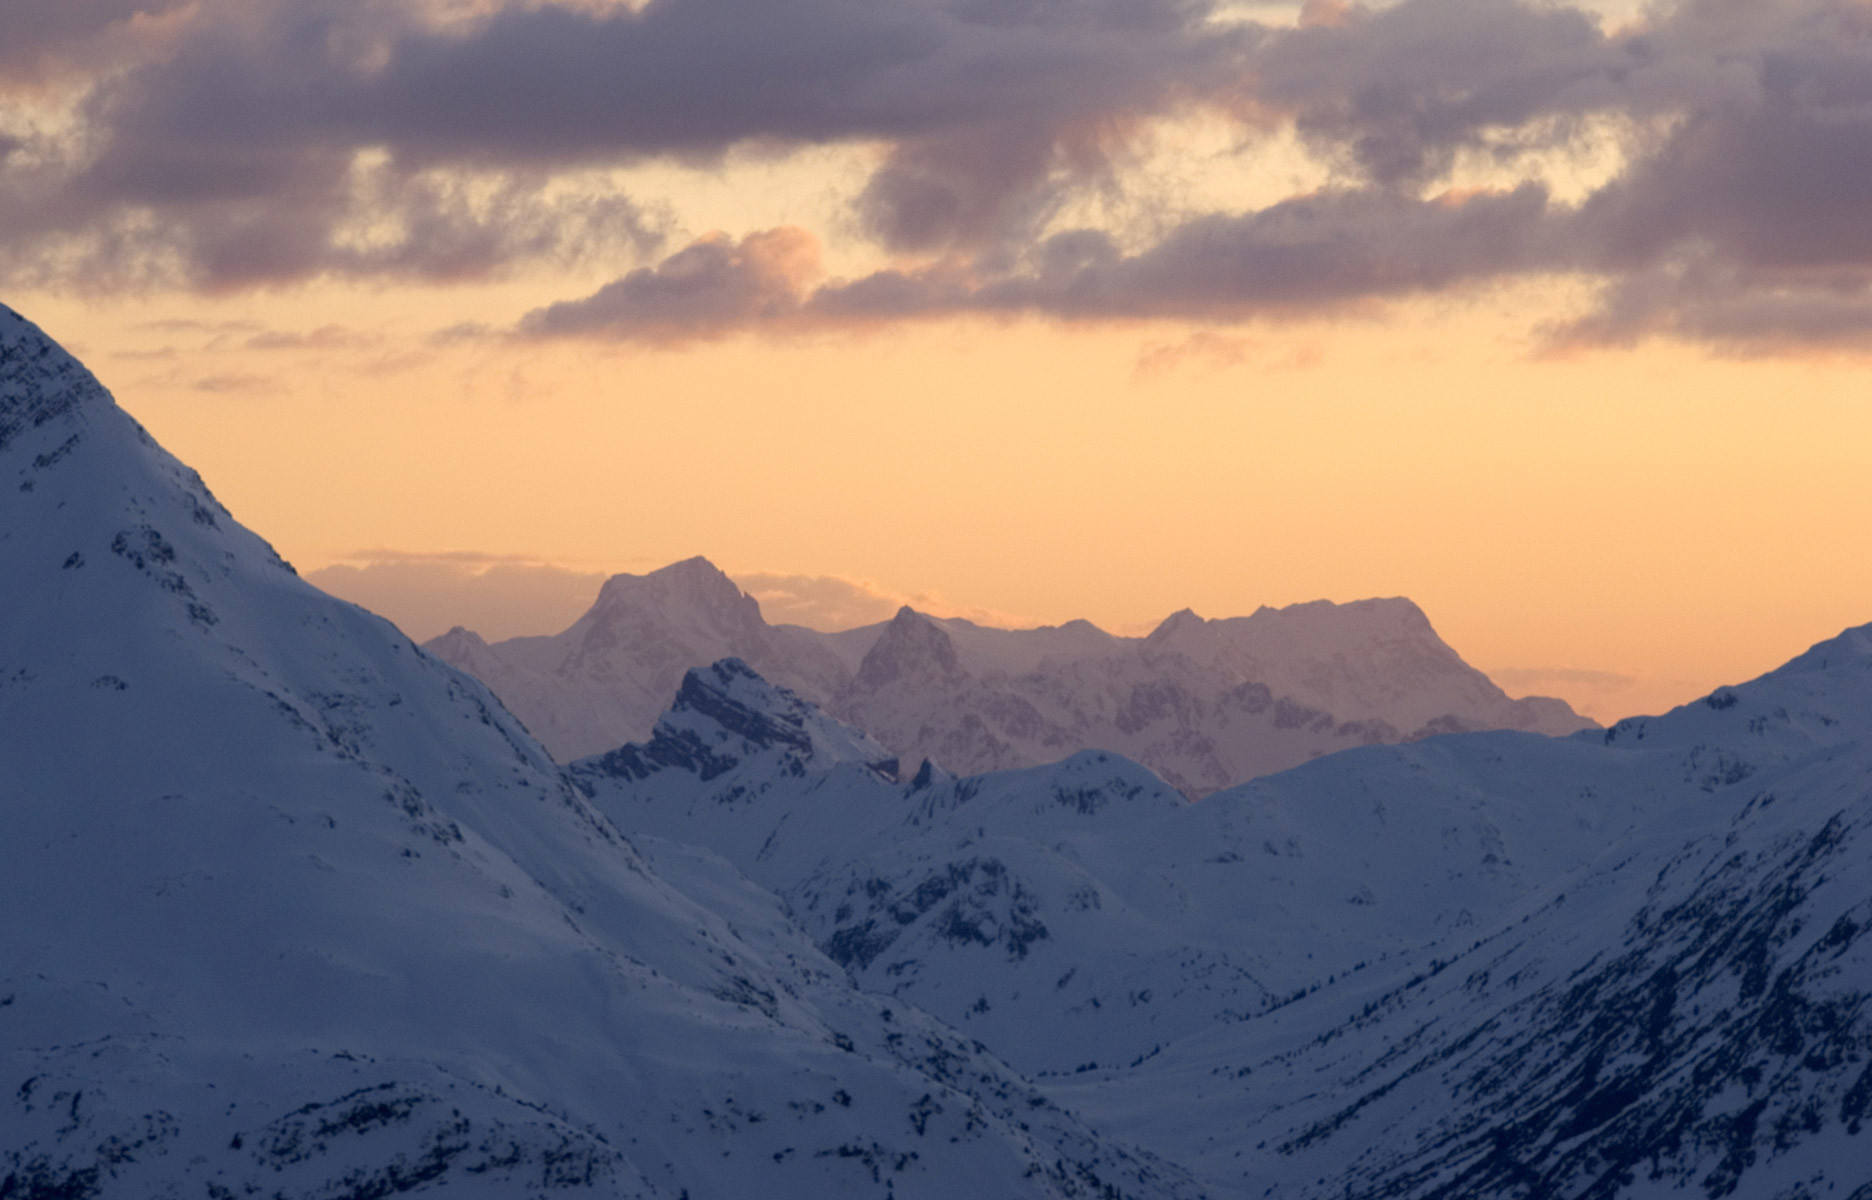 Lech escale chic au cœur du plus grand domaine skiable Autriche - the good life